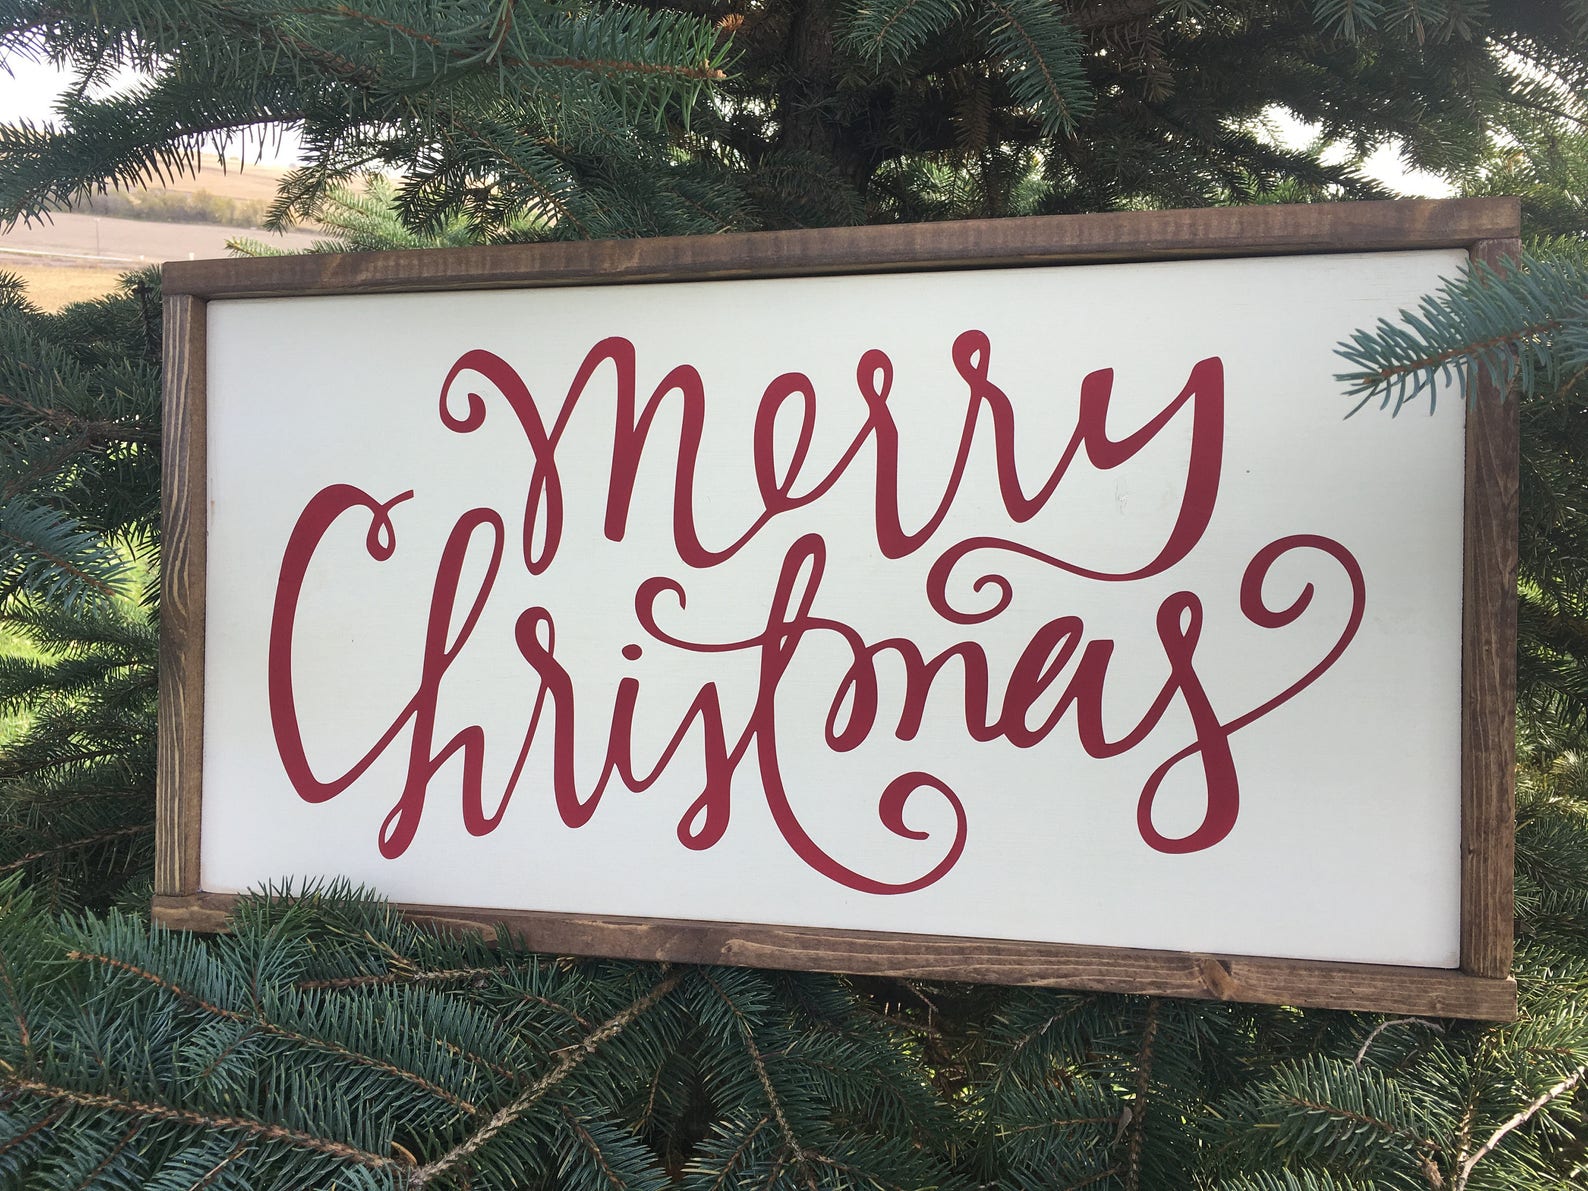 Merry Christmas wood sign Farmhouse Style Christmas Decor | Etsy